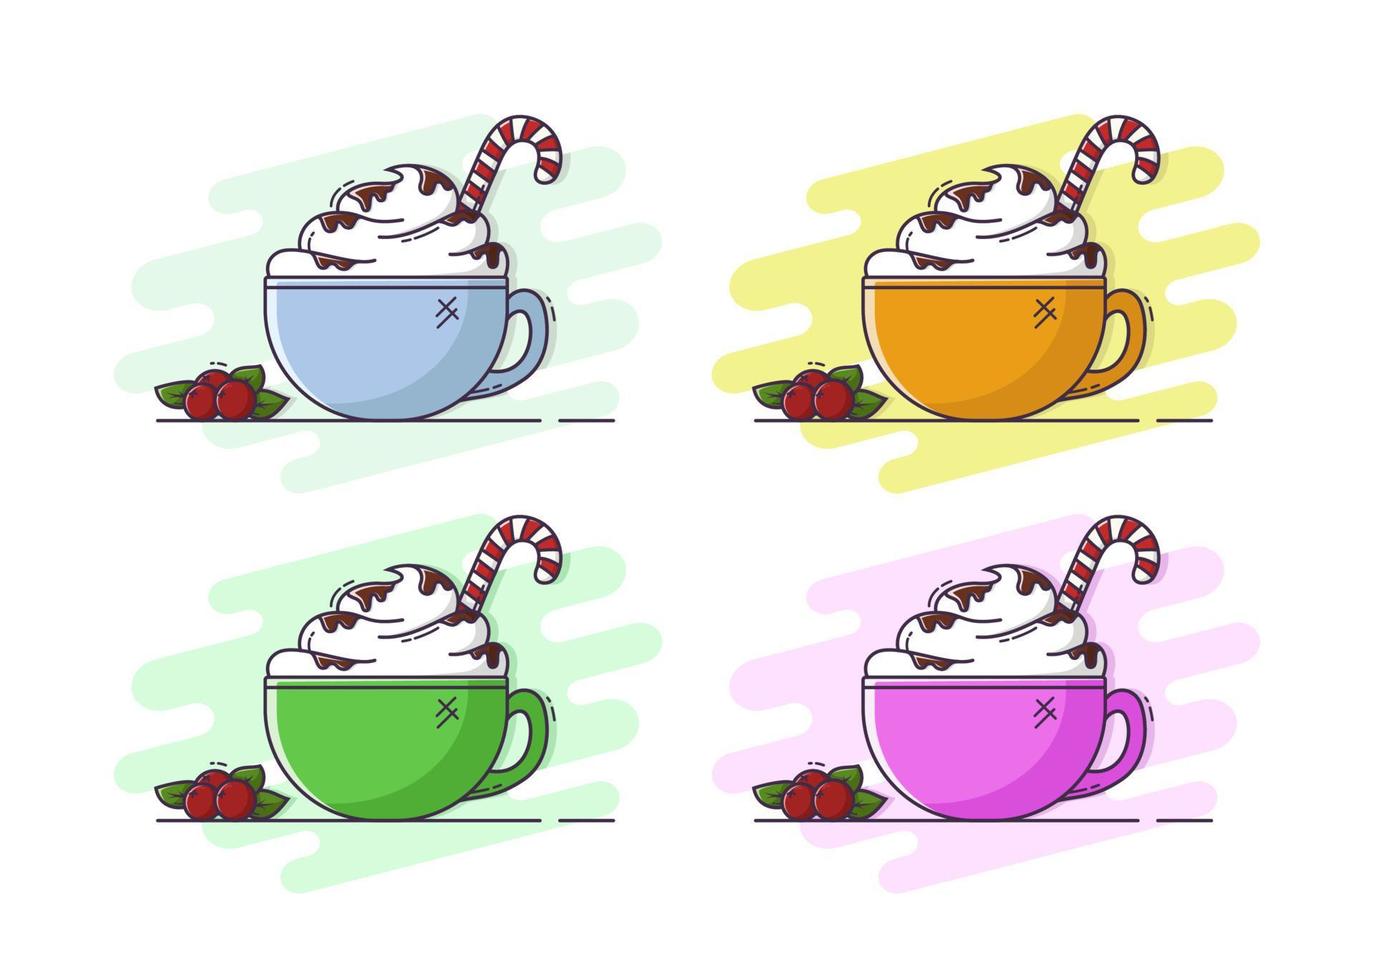 koffie met room, chocolade en snoep. kerst illustratie. vector